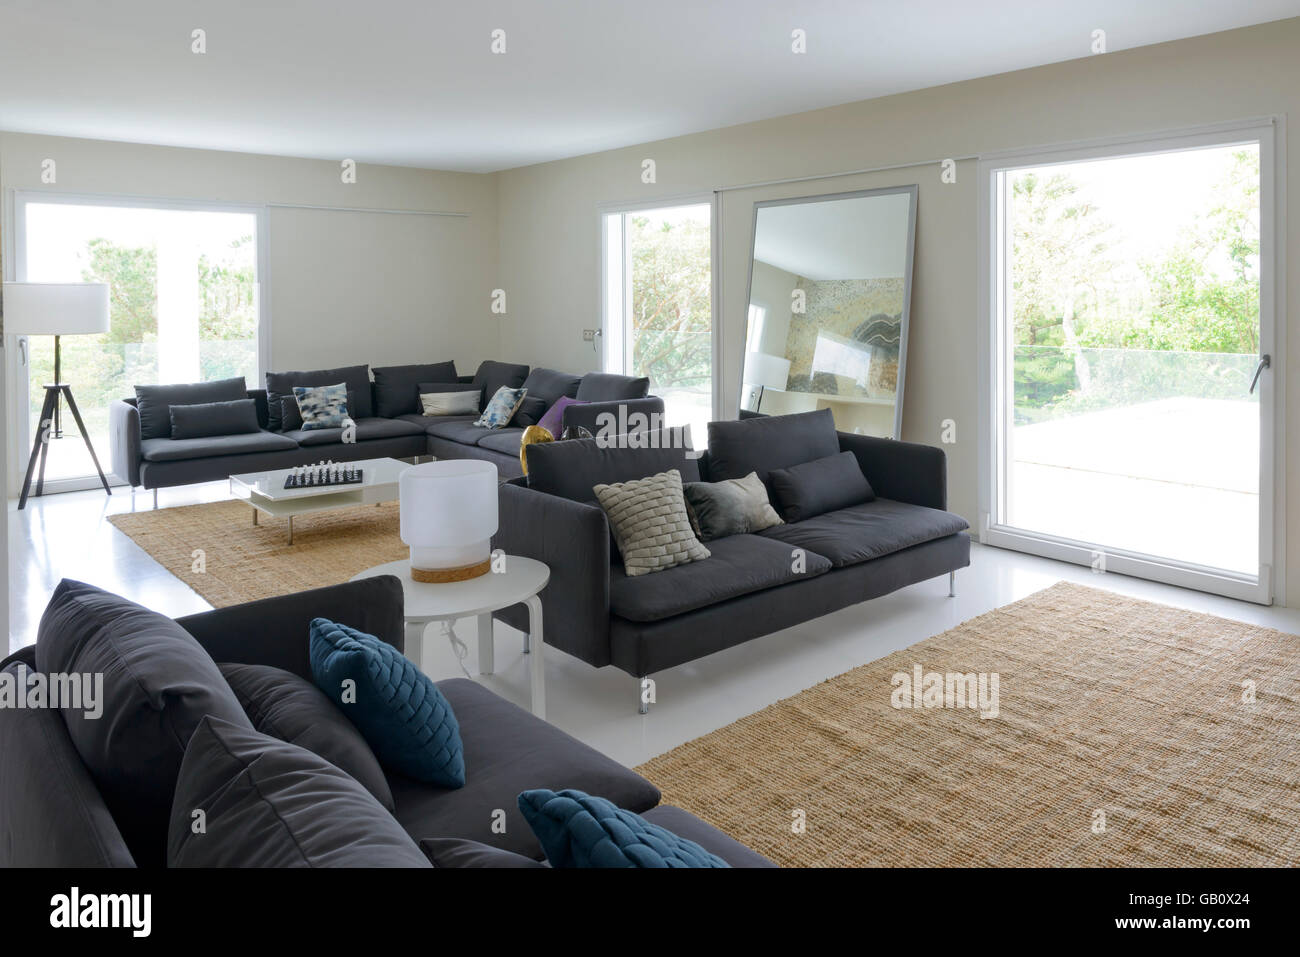 Modernes Wohnzimmer mit großen Sofas und hellen großen Fenstern Stockfoto